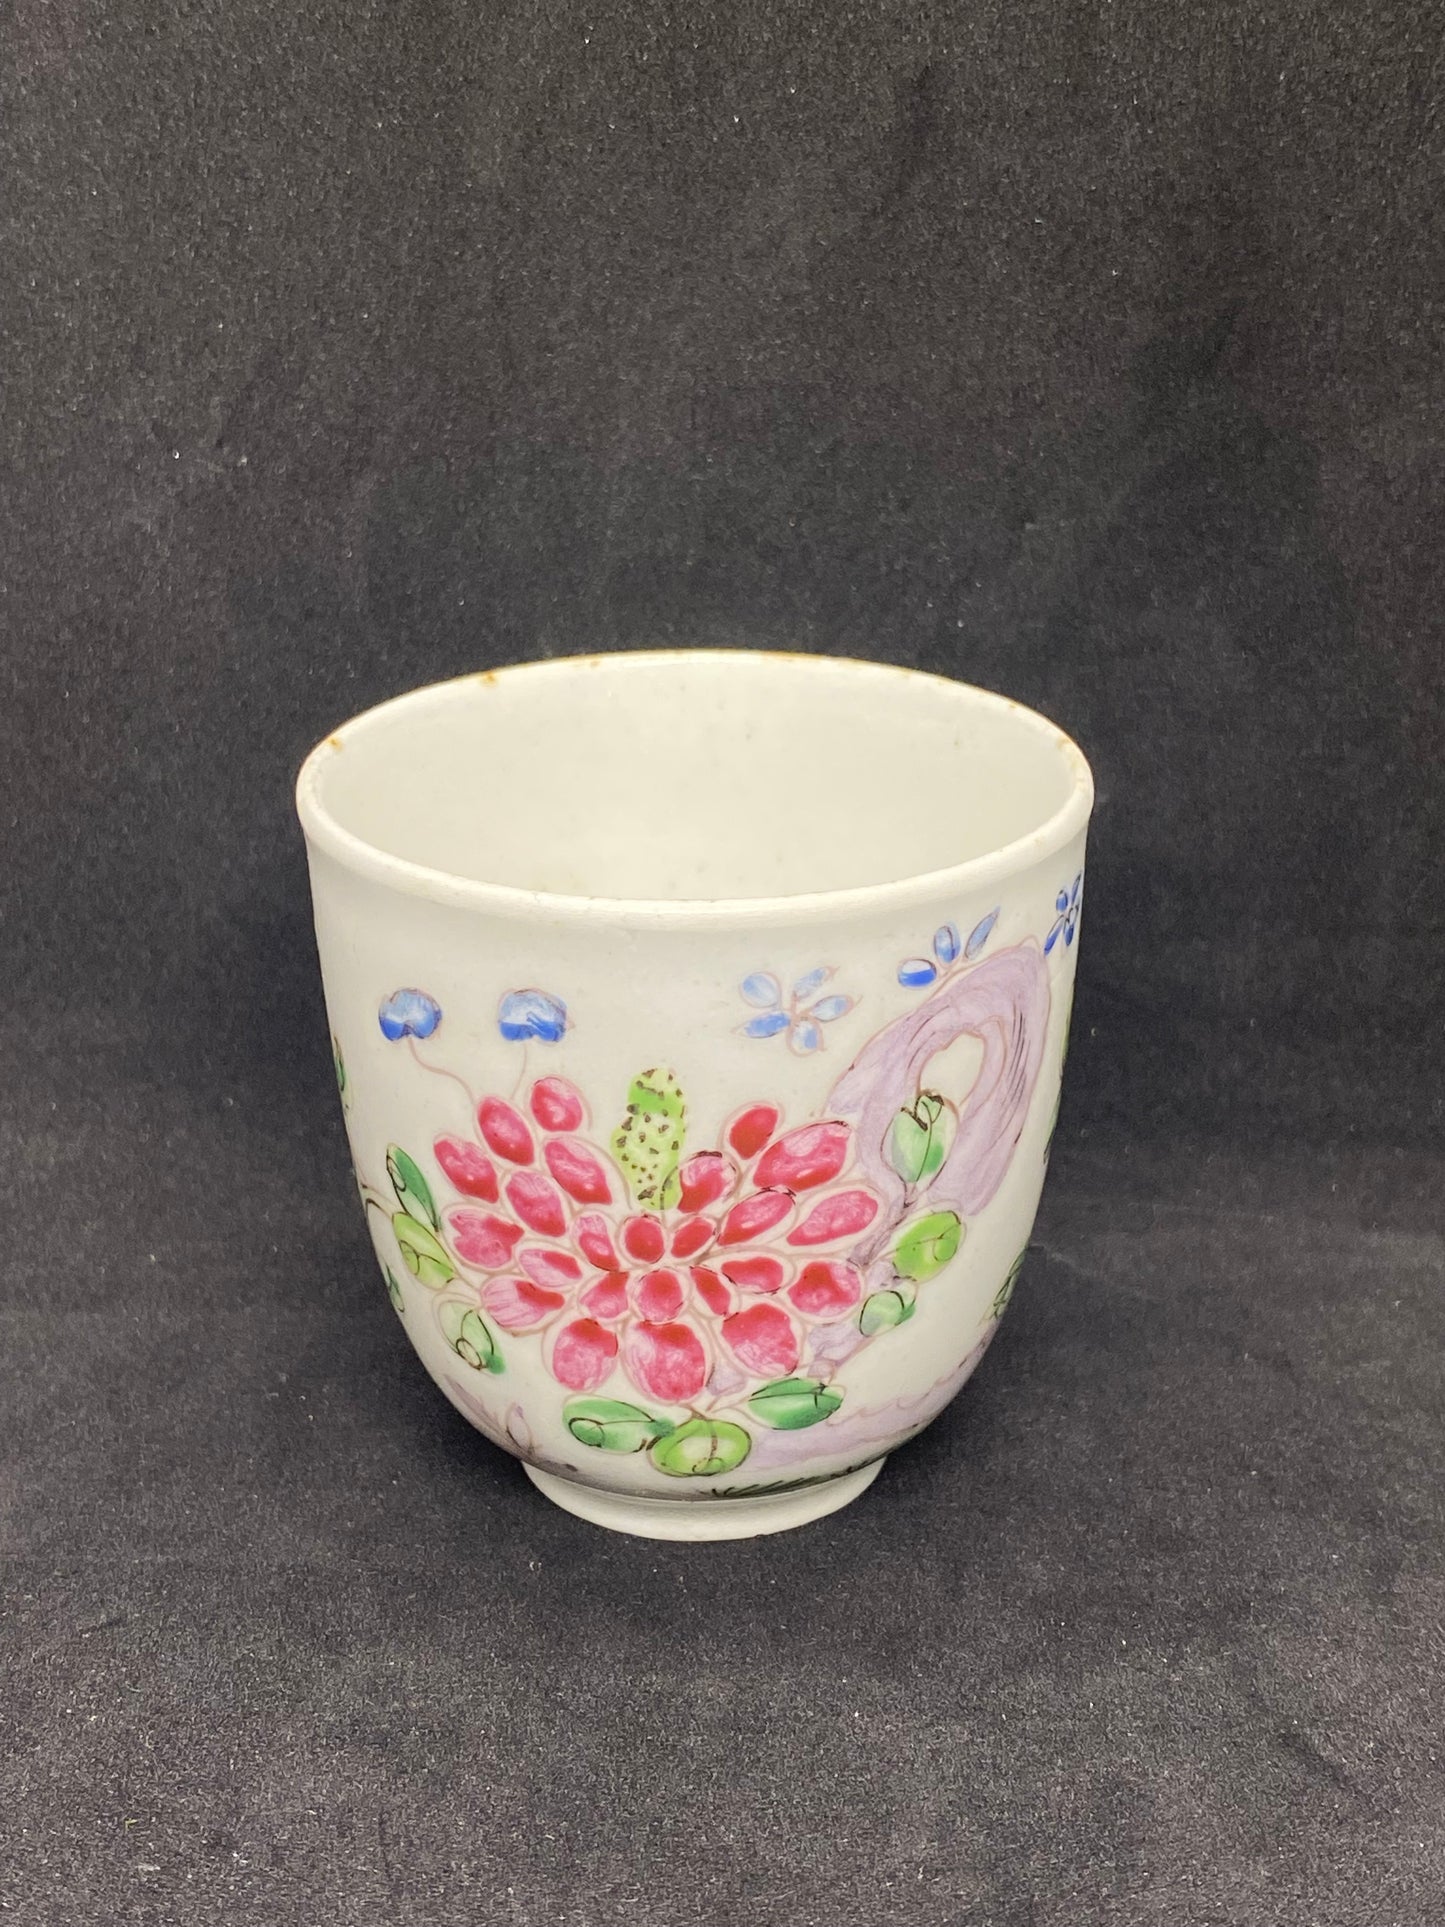 十八世纪弓形瓷粉彩咖啡罐杯 约 1750-1752 年